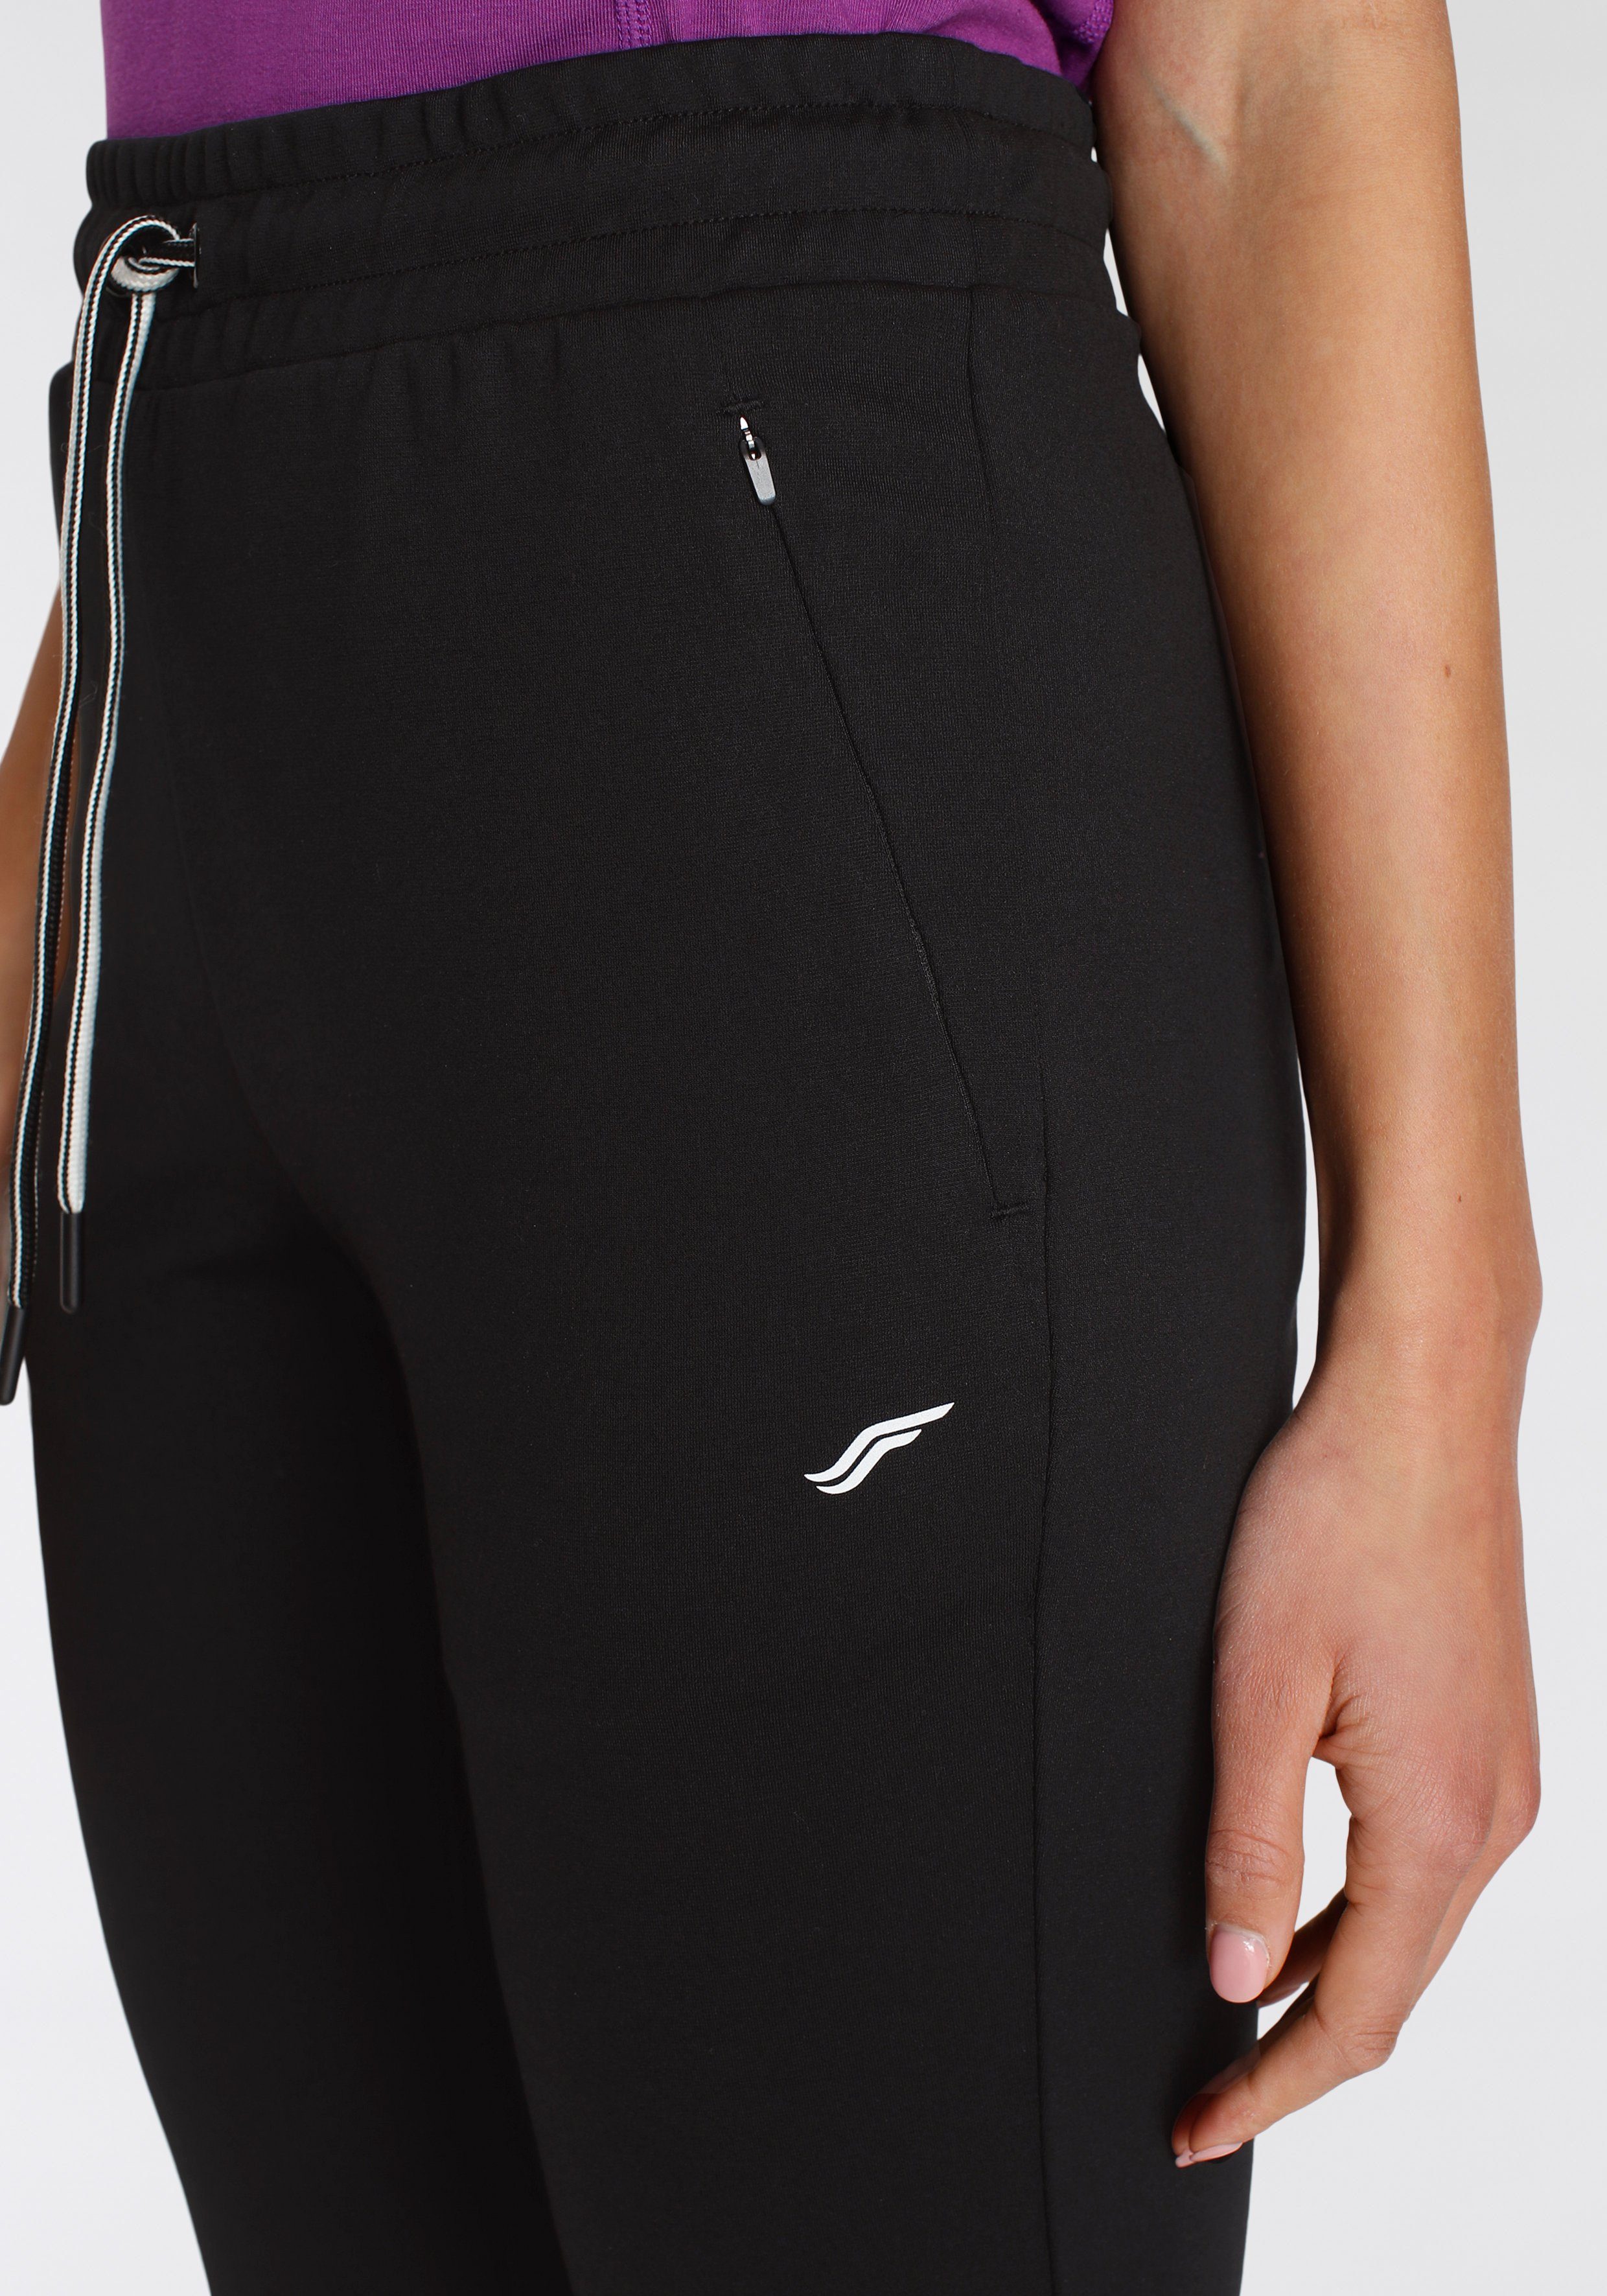 schwarz Relaxed mit Reißverschlusstaschen Jogginghose FAYN SPORTS Fit